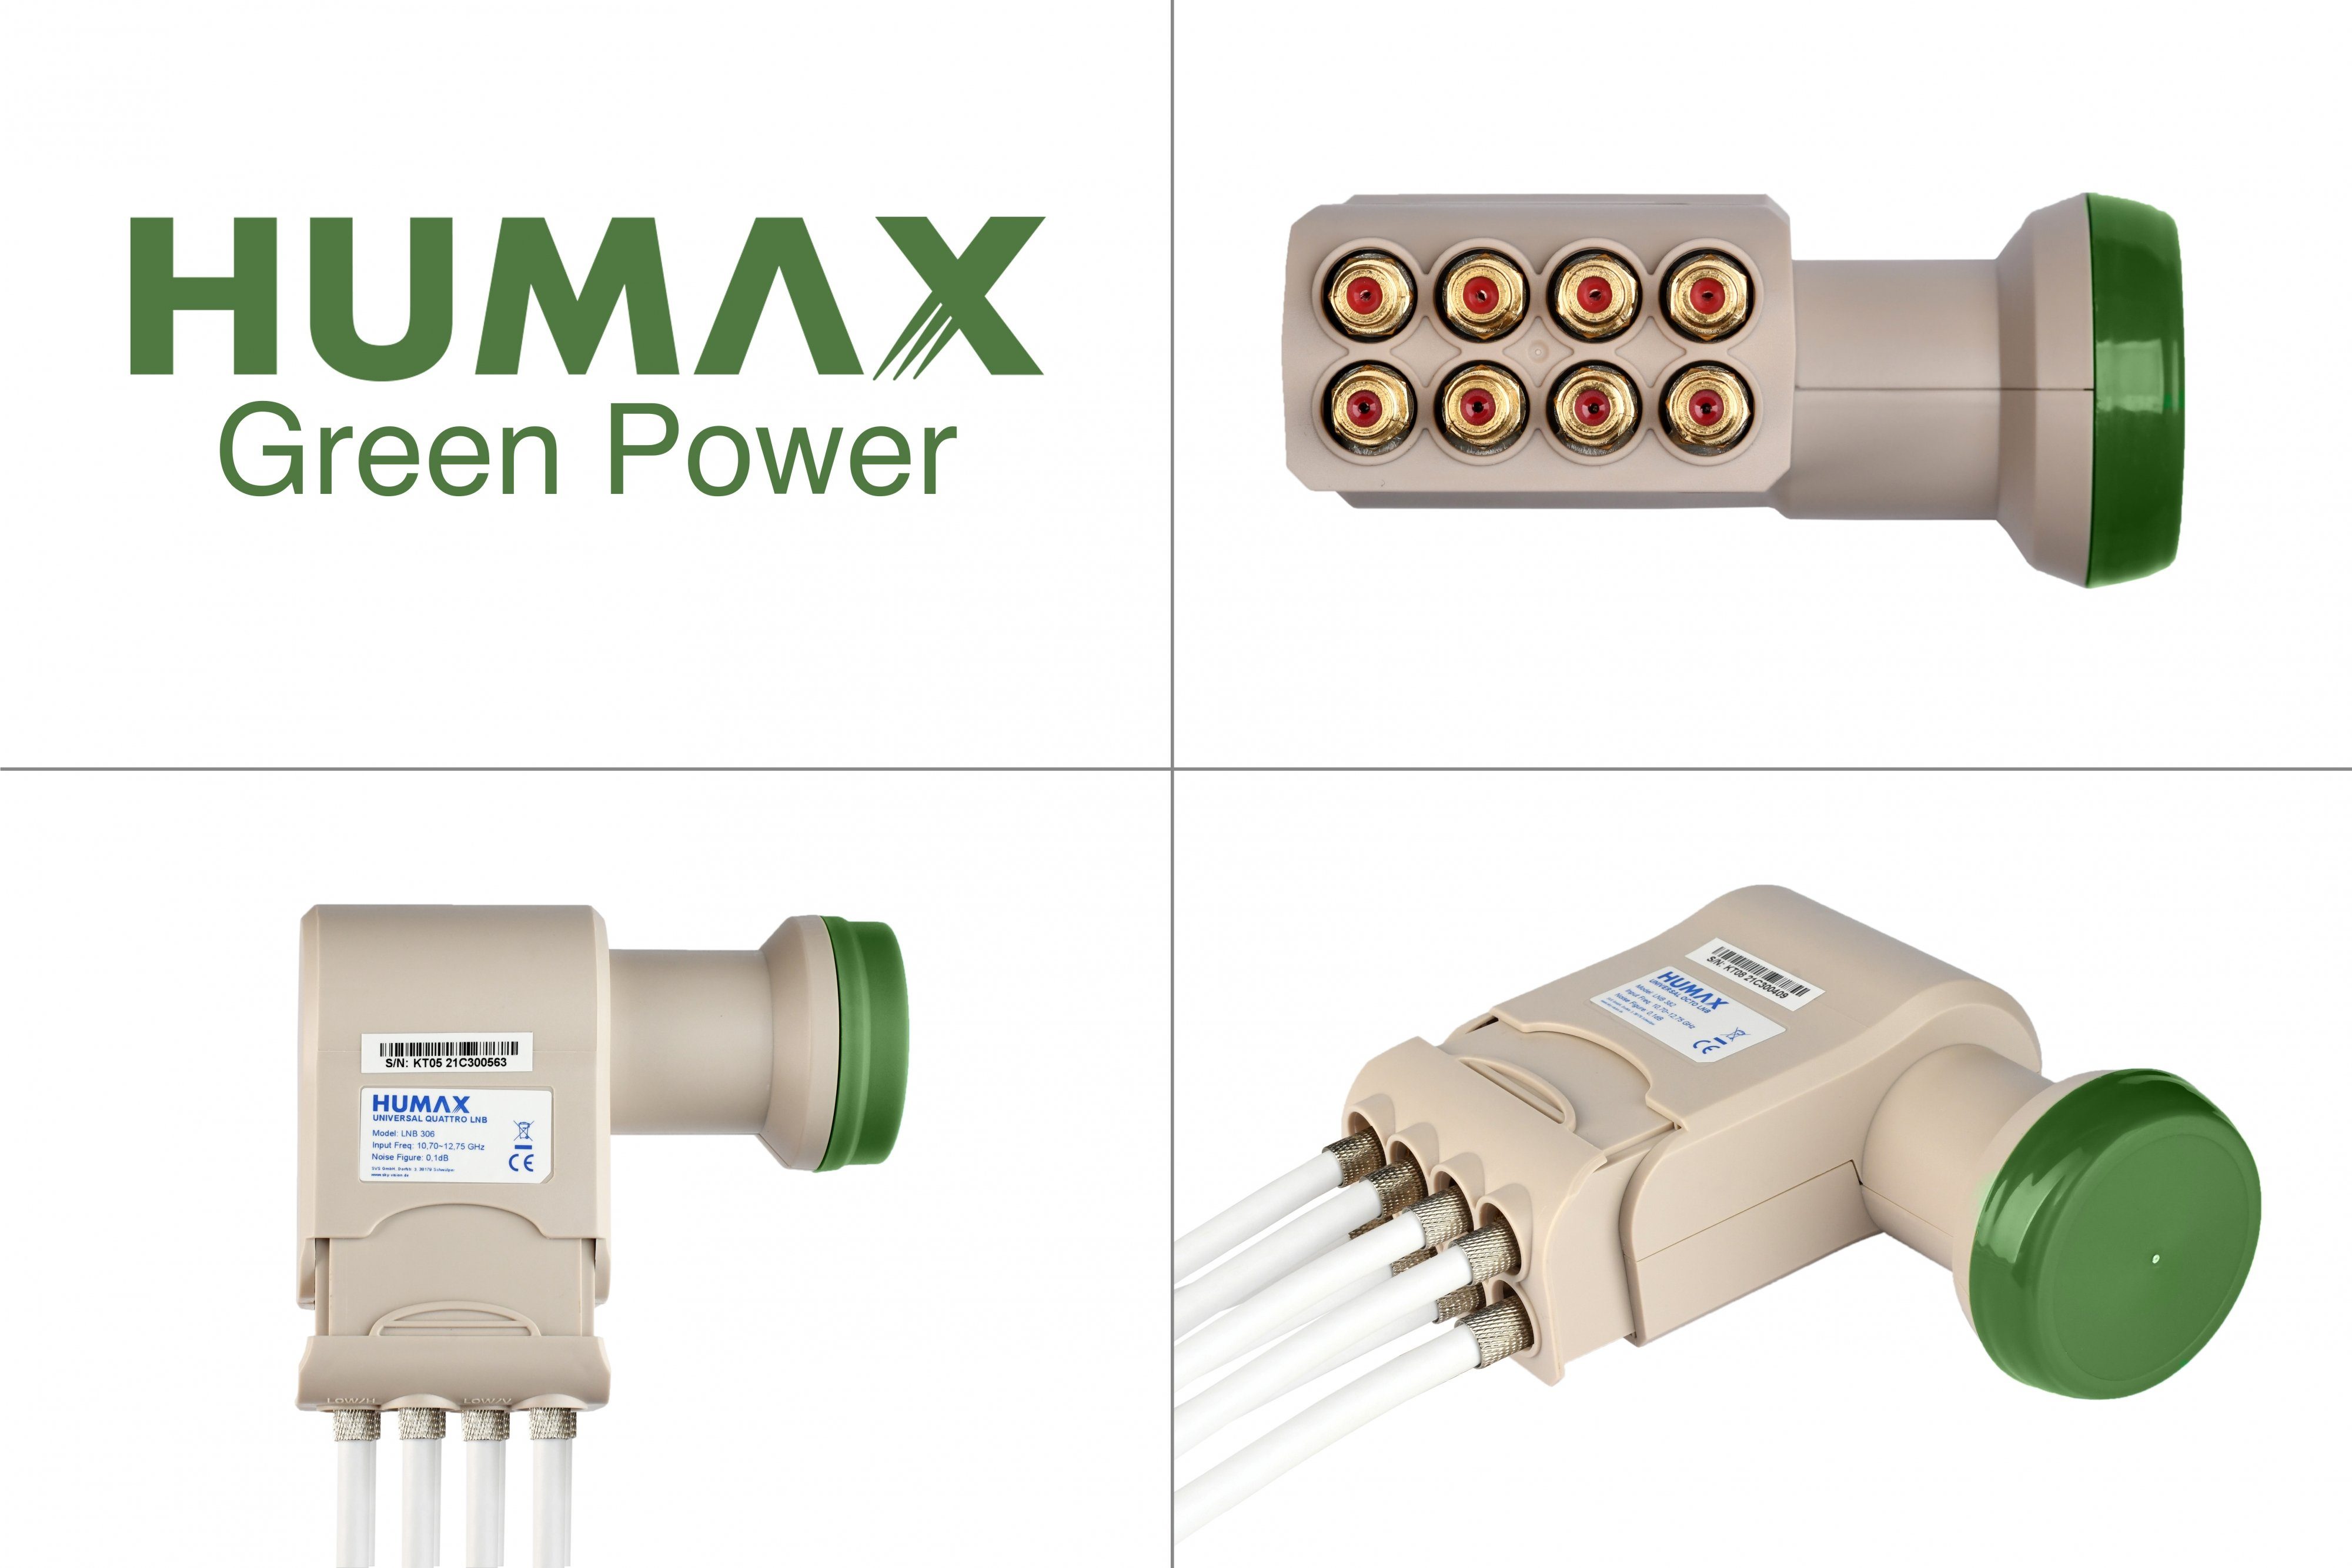 (für Umweltfreundliche Universal-Octo-LNB Octo-LNB Teilnehmer, Power LTE Filter) Green 382, Verpackung, 8 stromsparend Humax